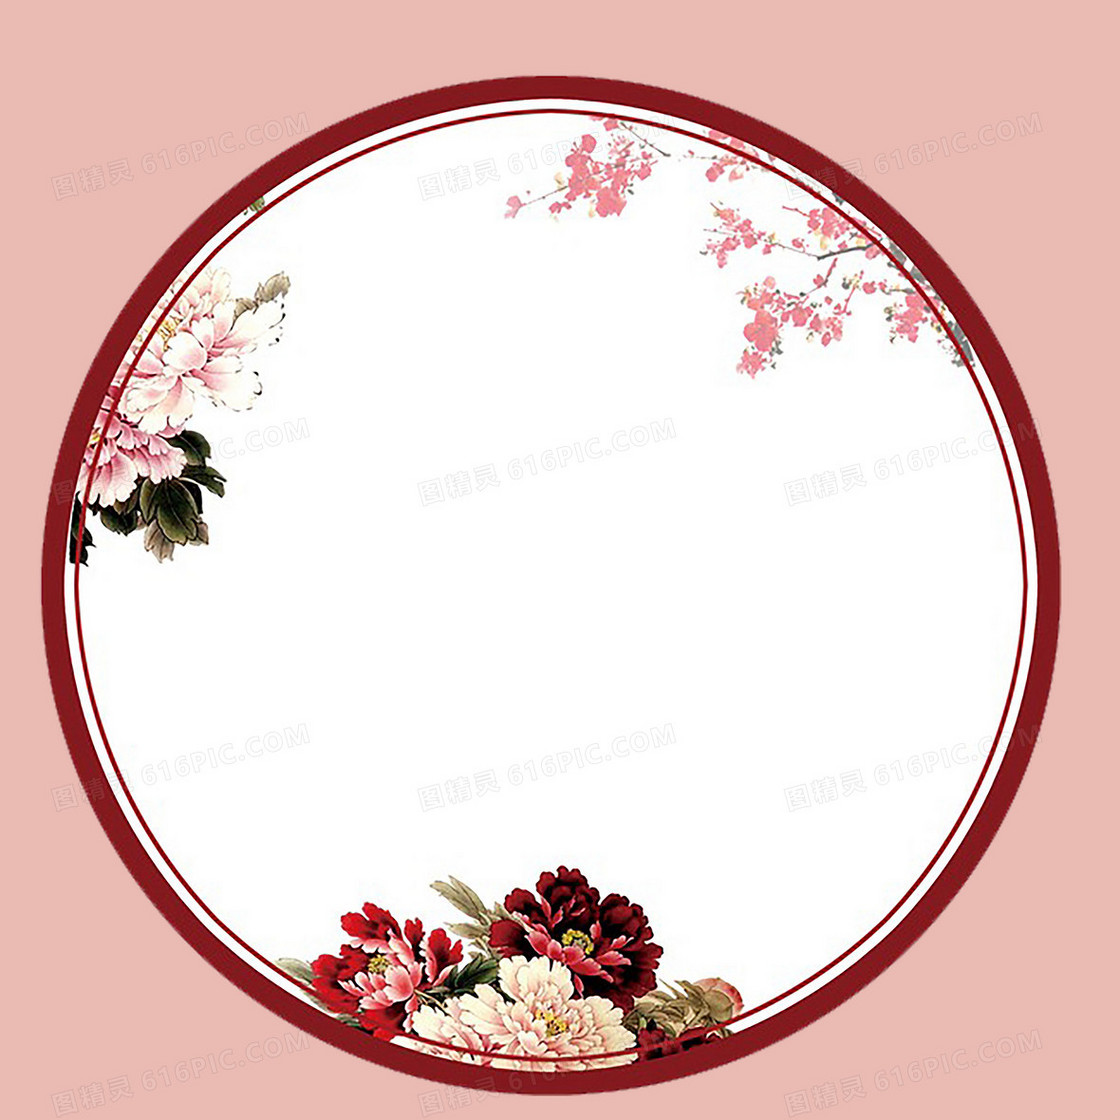 粉色圆形牡丹花卉边框